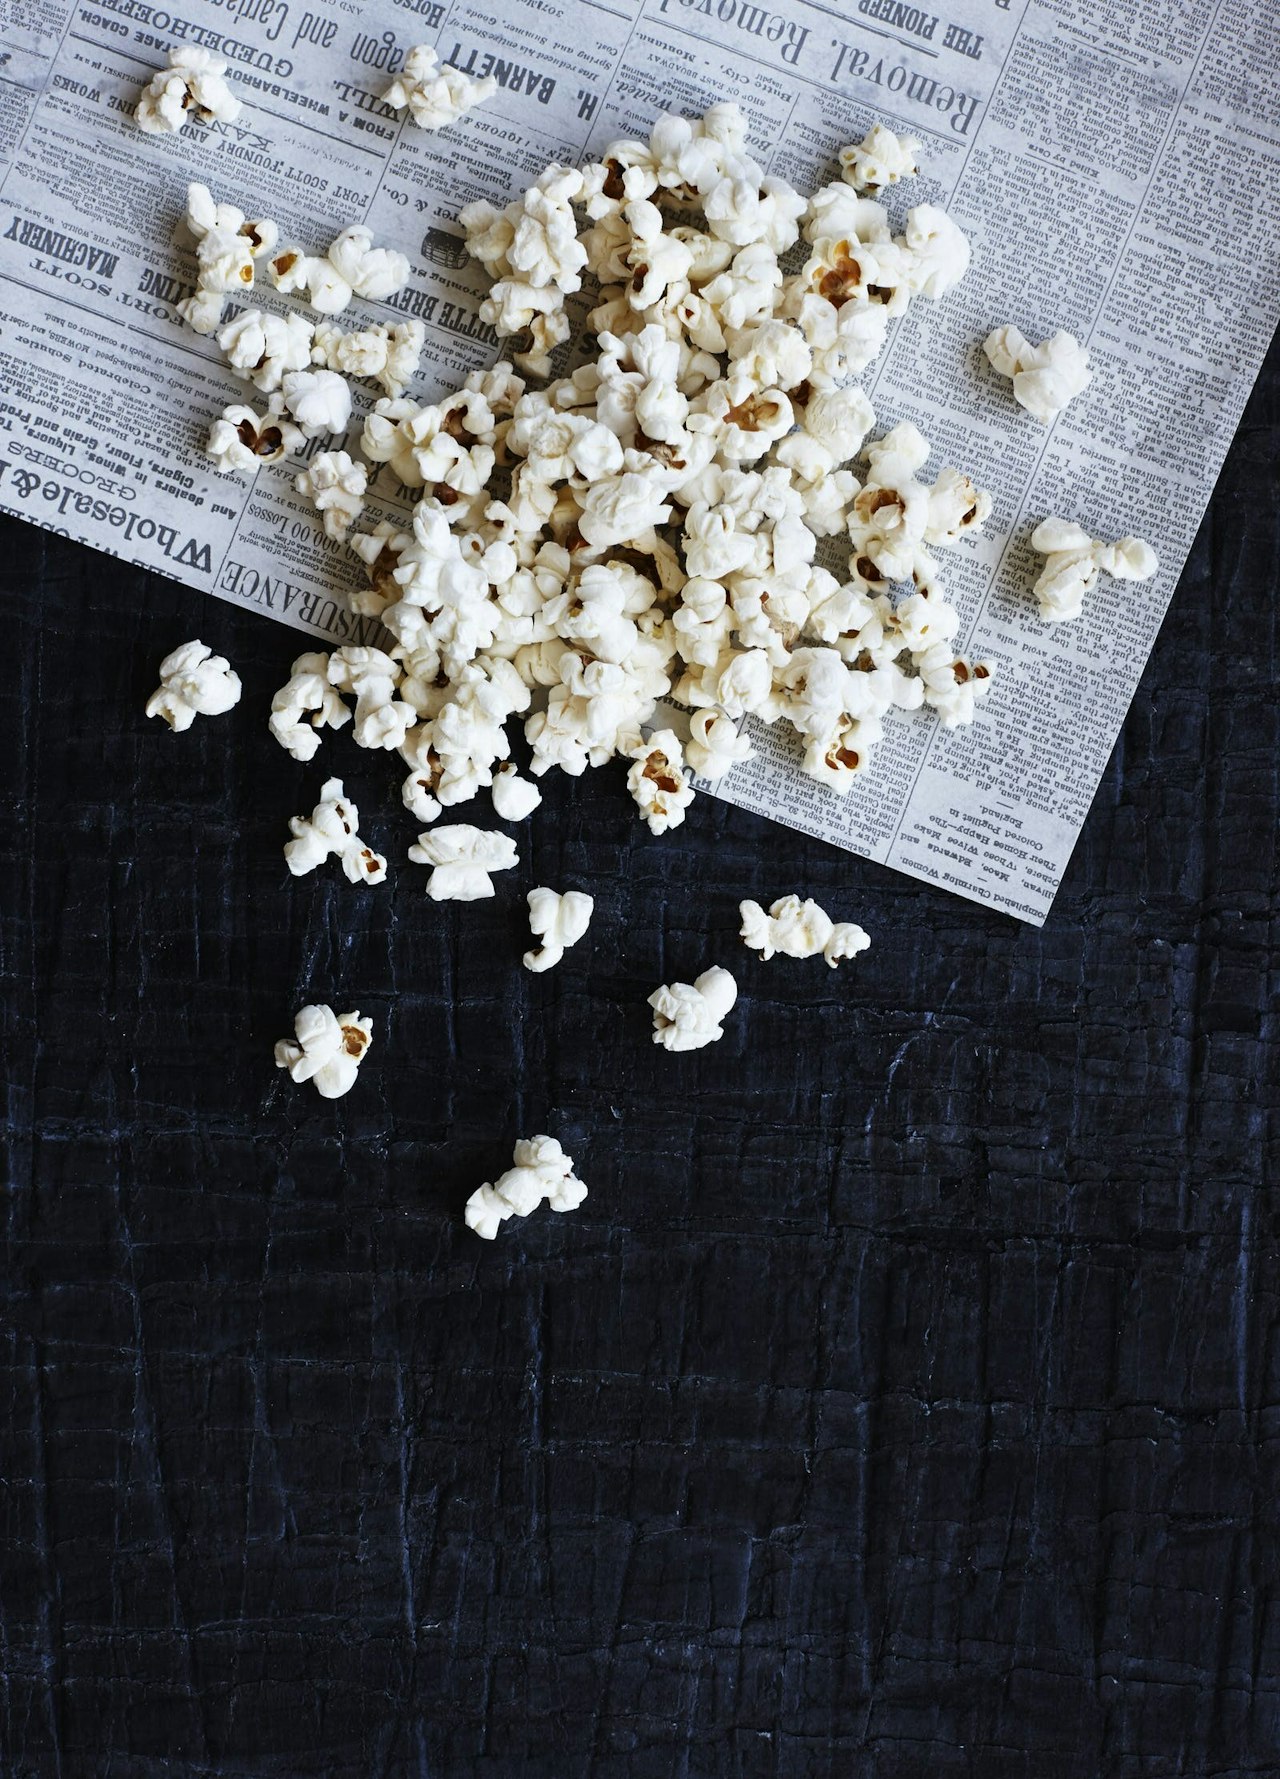 Hjemmelavede popcorn